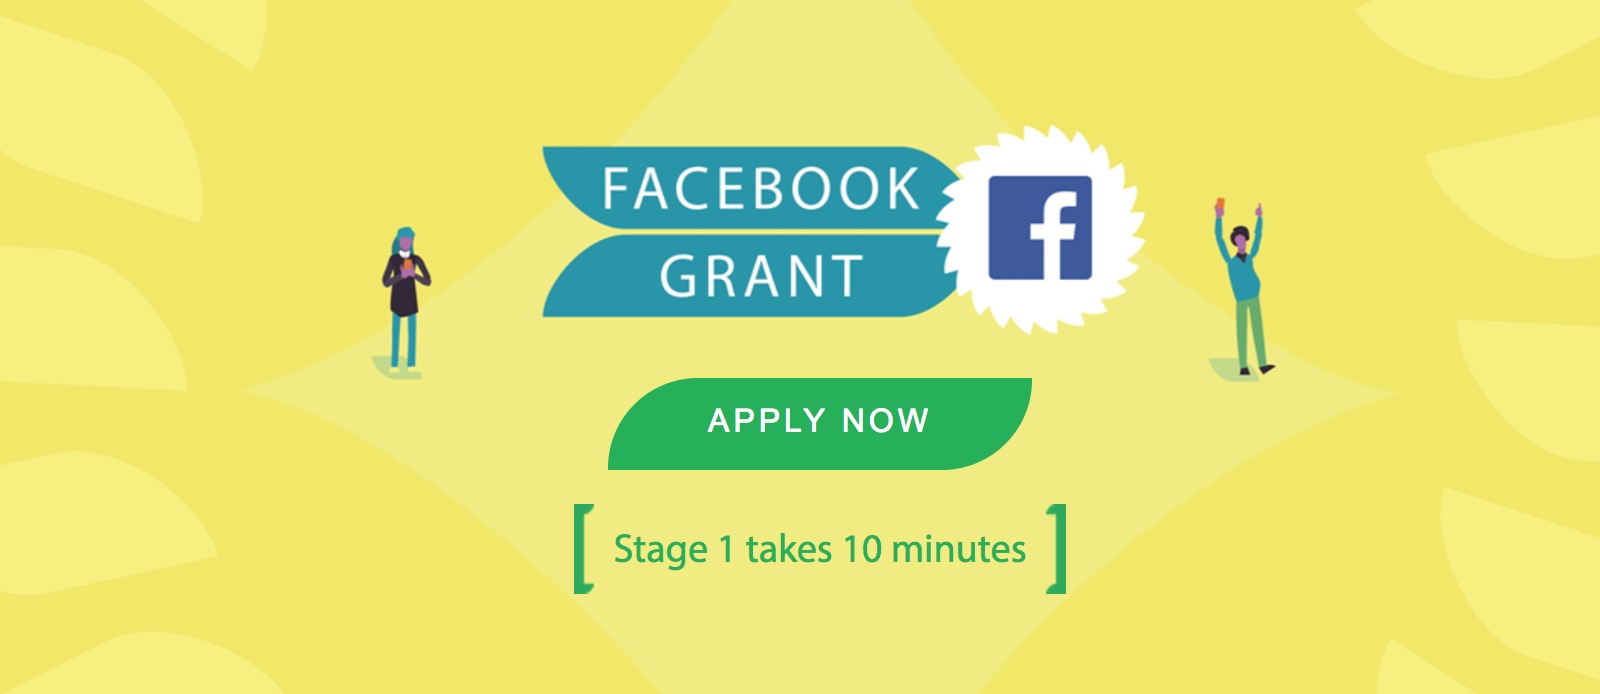 Facebook grants grants to creators of useful communities